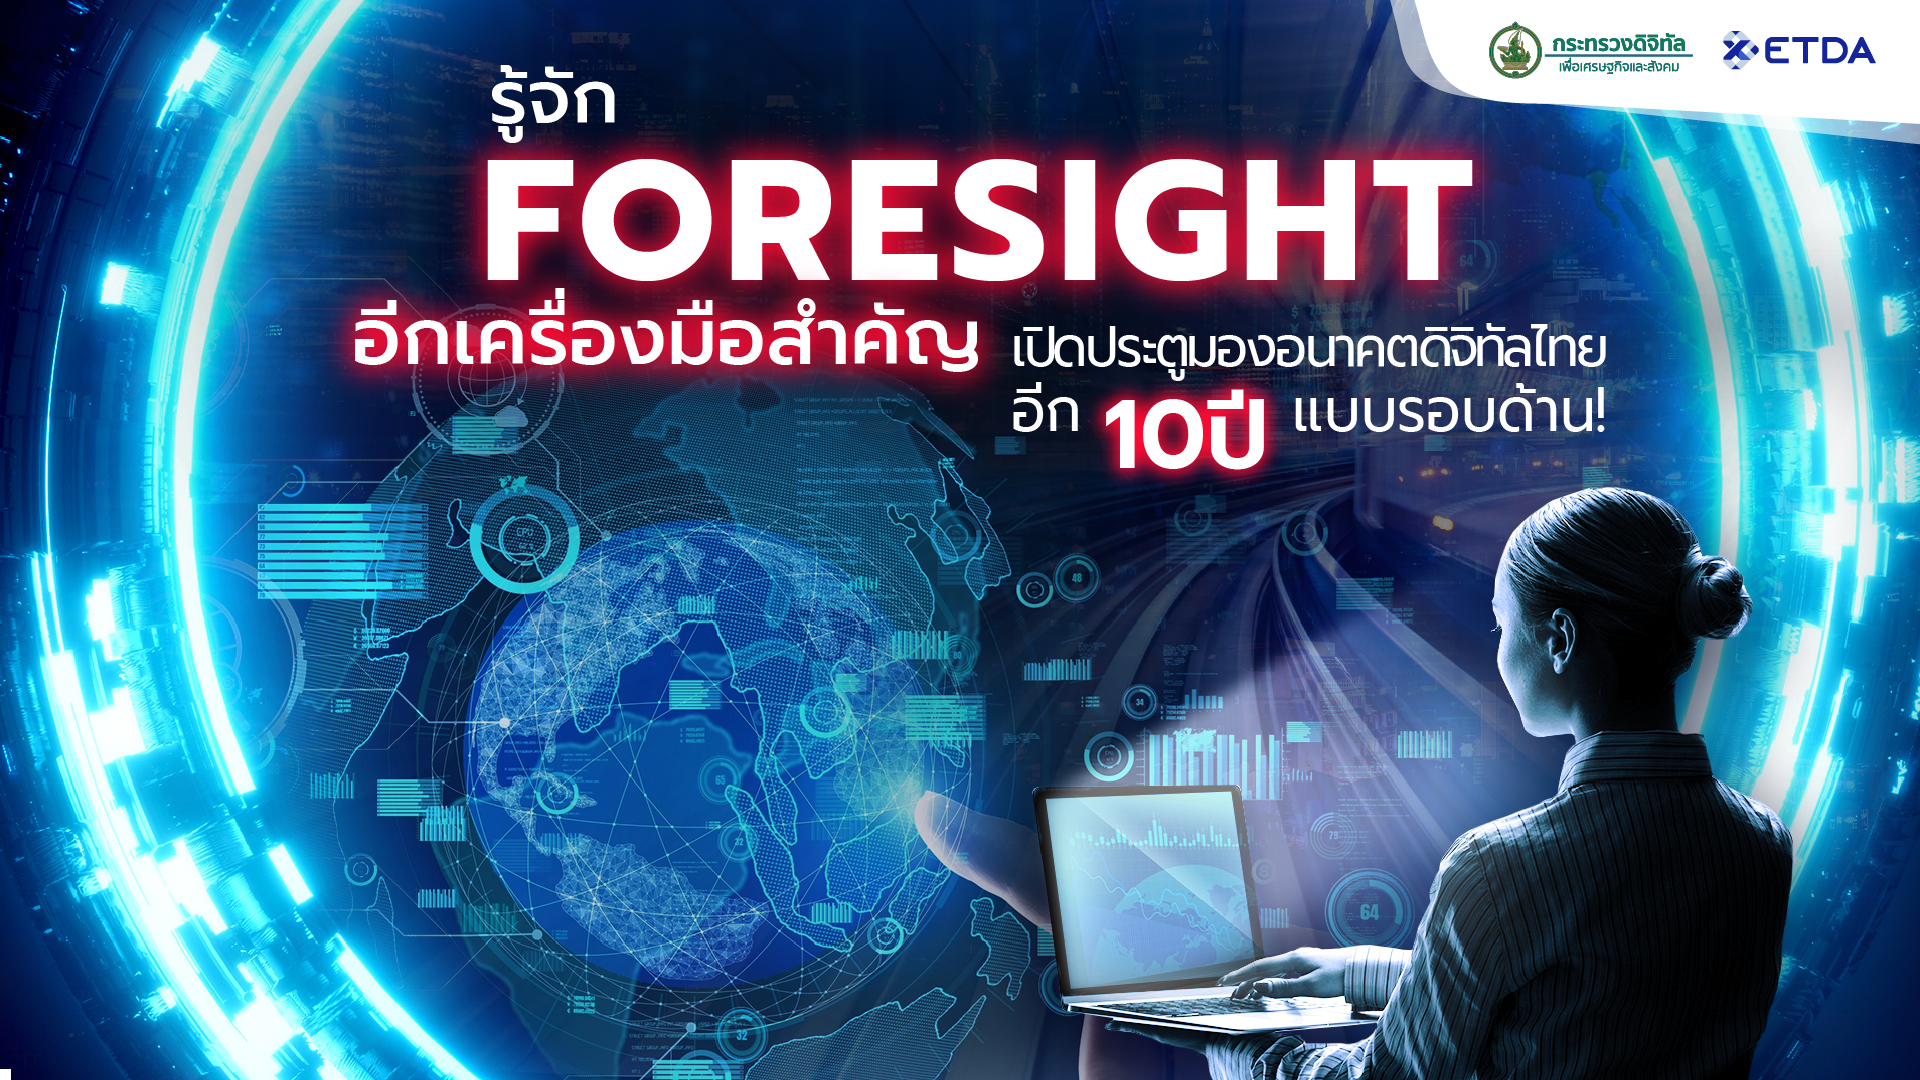 รู้จัก Foresight (ฟอร์ไซท์) อีกเครื่องมือสำคัญ เปิดประตูมองอนาคตดิจิทัลไทยอีก 10 ปีแบบรอบด้าน!